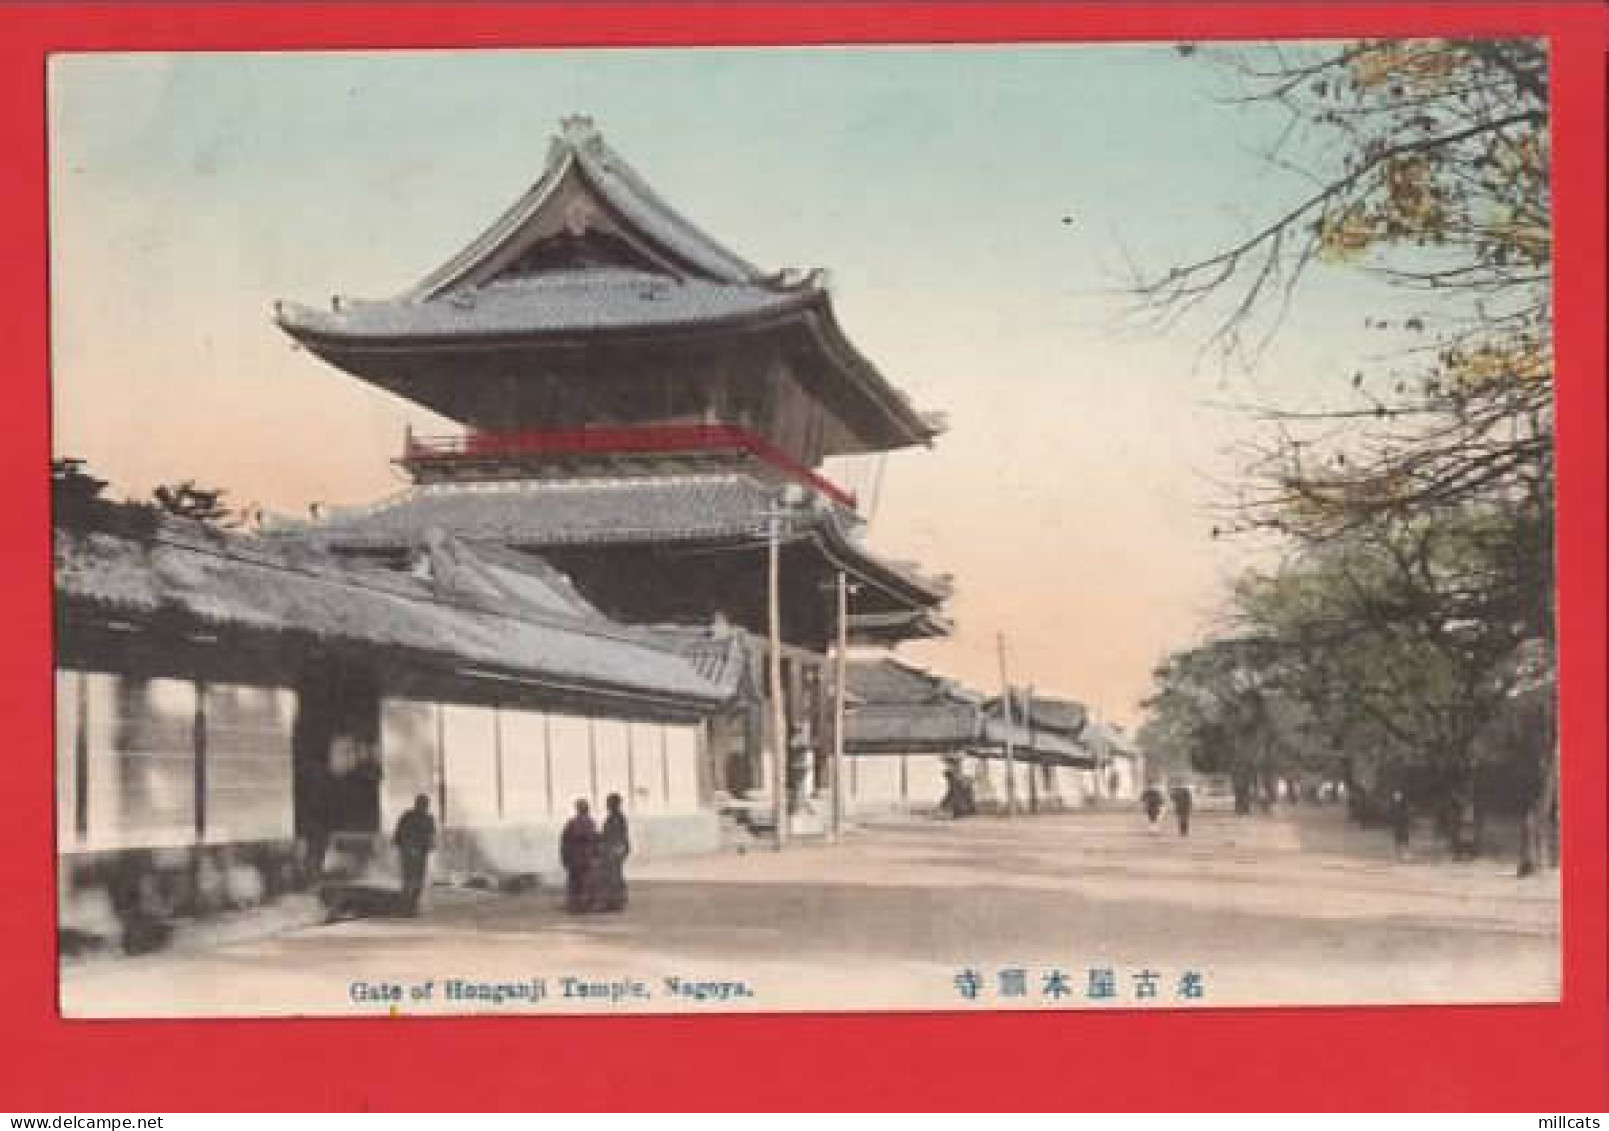 JAPAN  GATE OF HONGANJI TEMPLE  - Nagoya